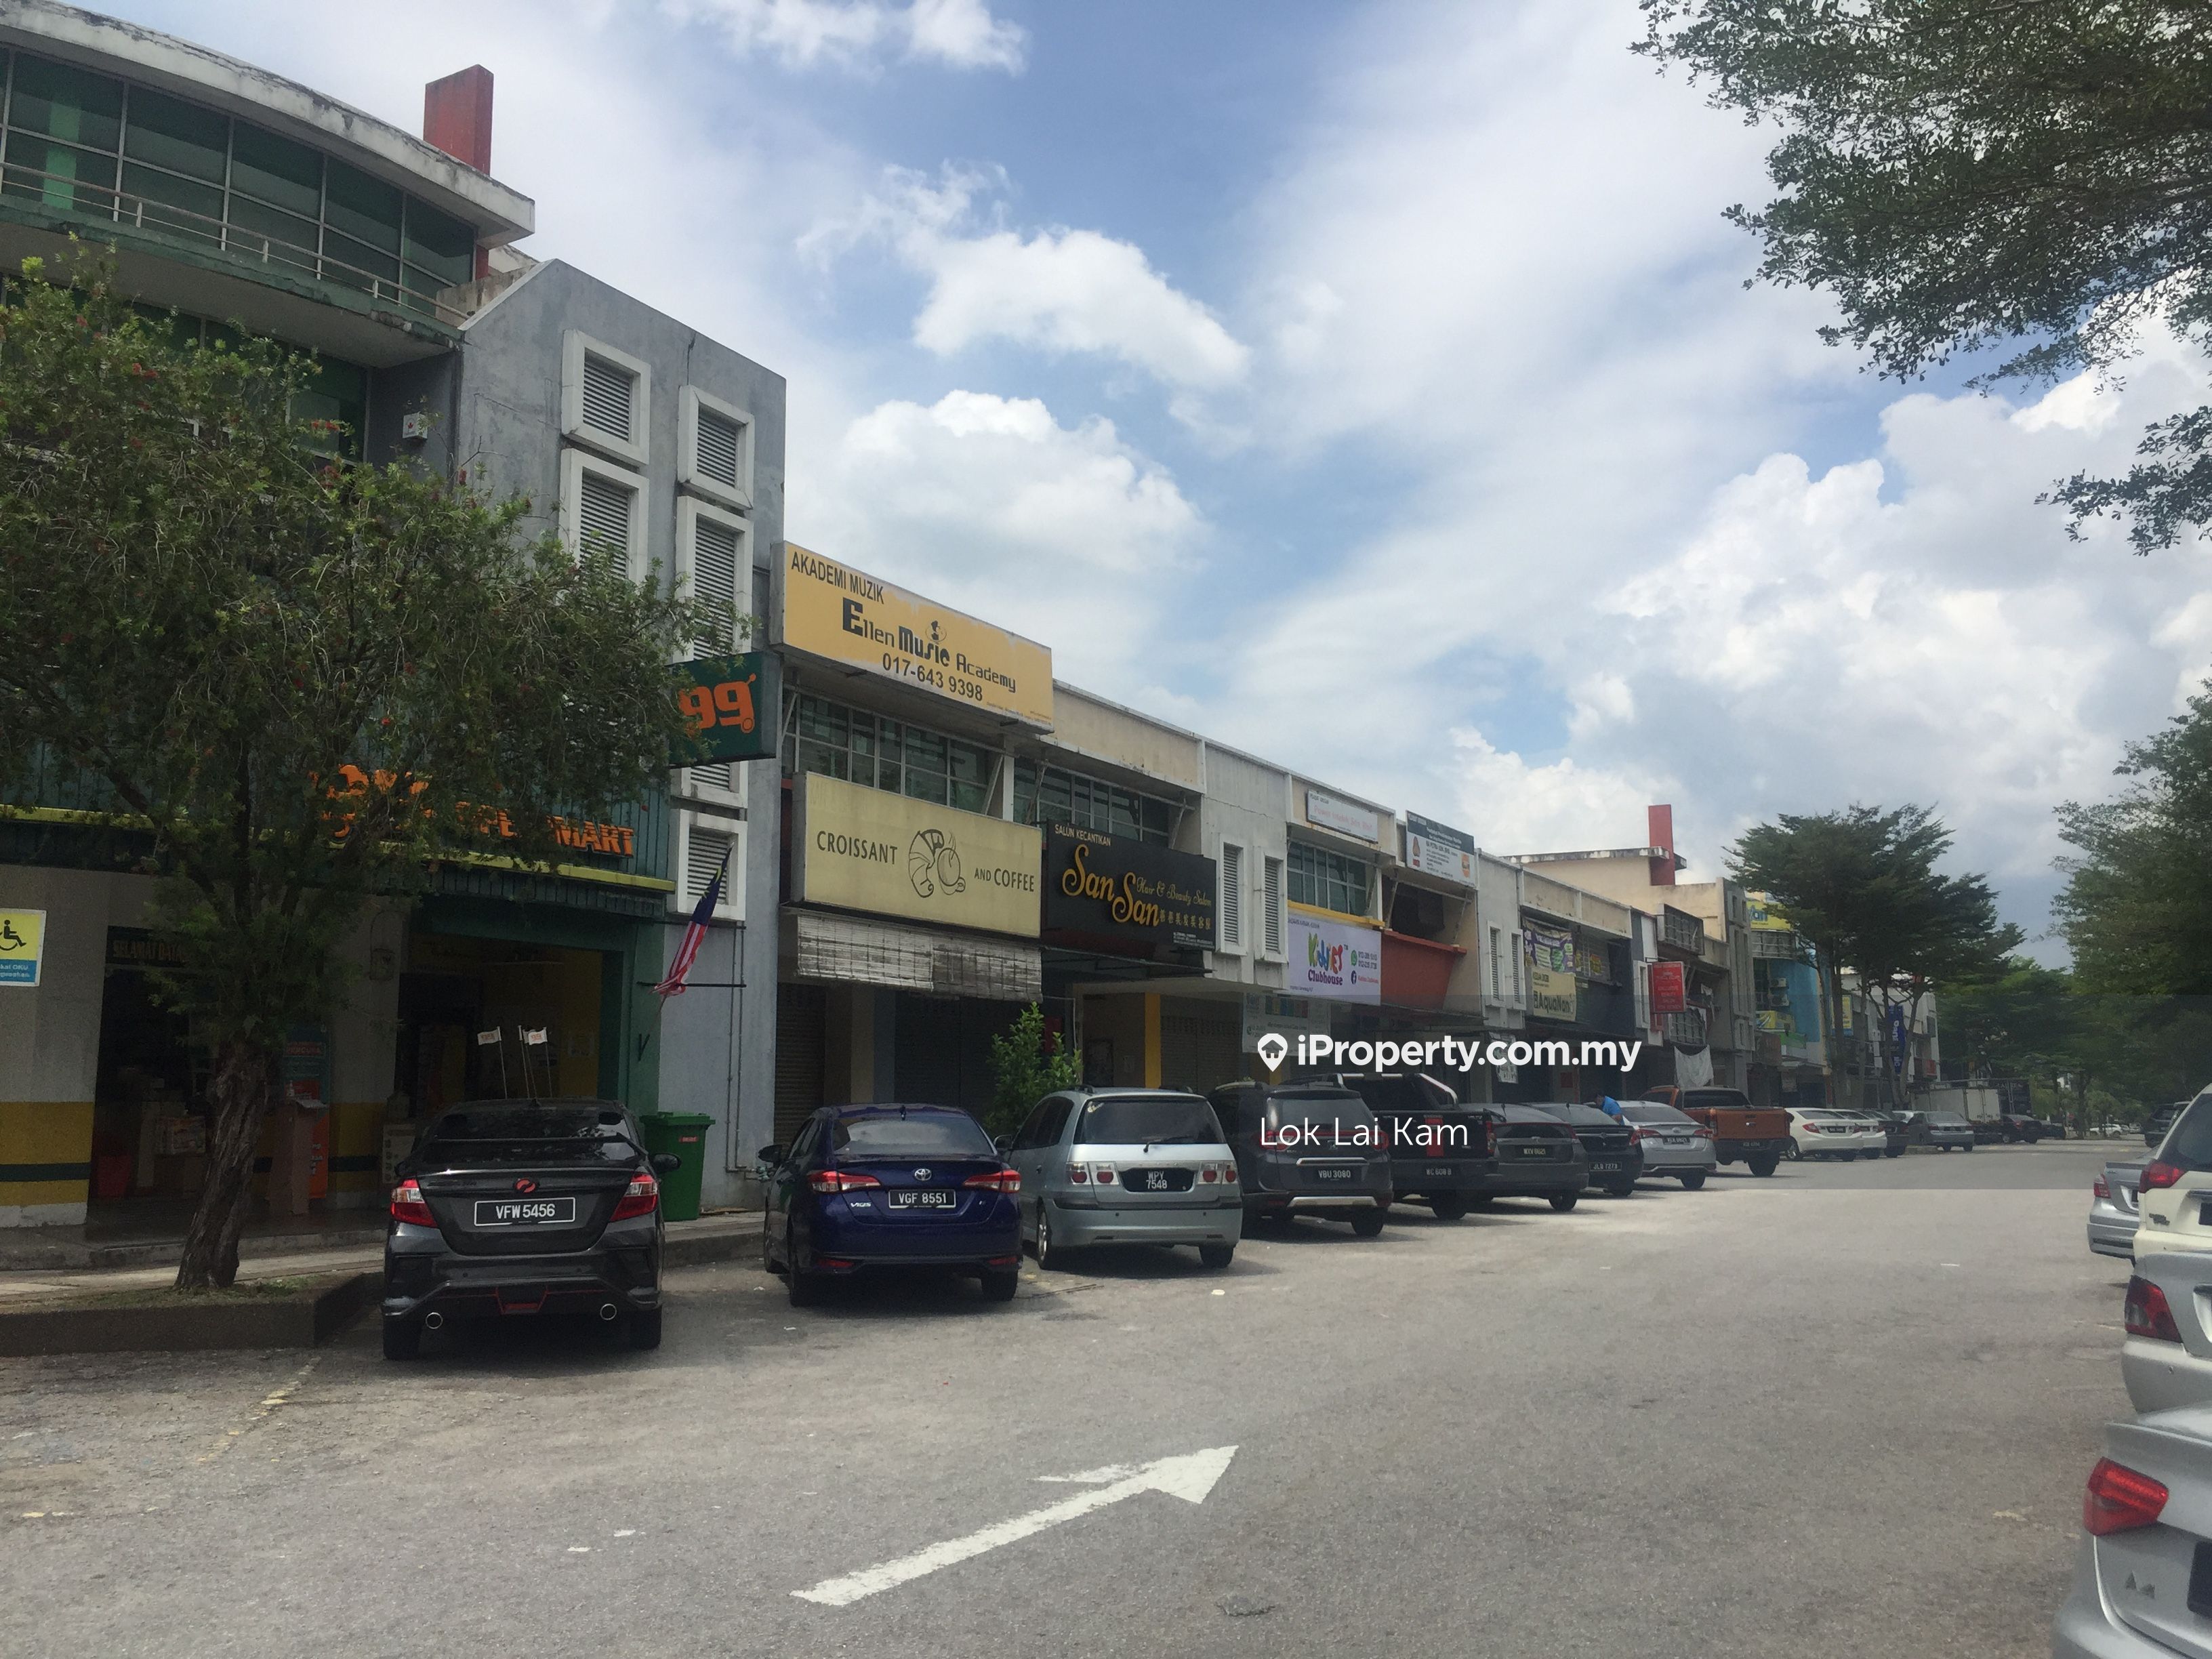 Putra Point Commercial Center, Subang Jaya, USJ, Putra Heights, Putra Heights